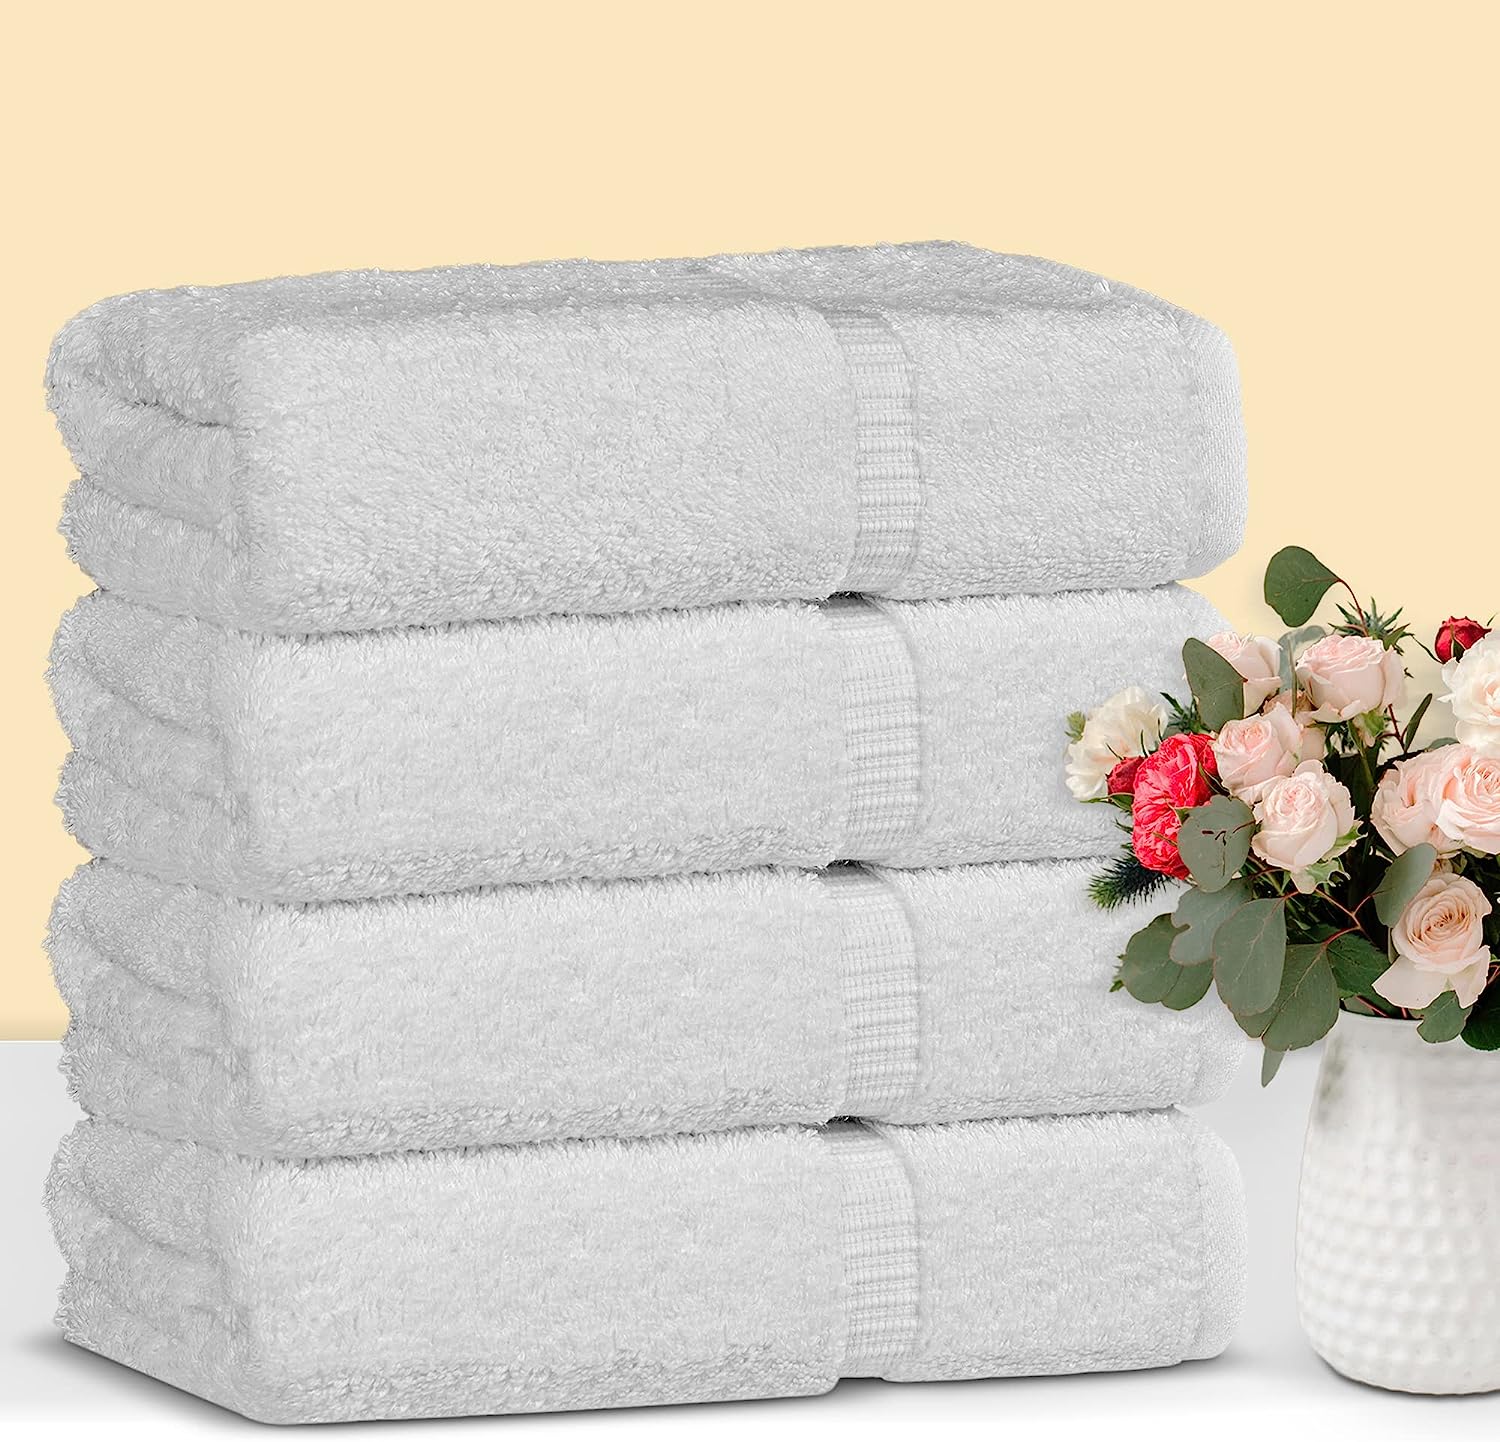 Hammam Linen - Juego de toallas pequeñas prémium de algodón turco, calidad  de hotel, máxima suavidad y absorción, ideales para la cara, manos, cocina